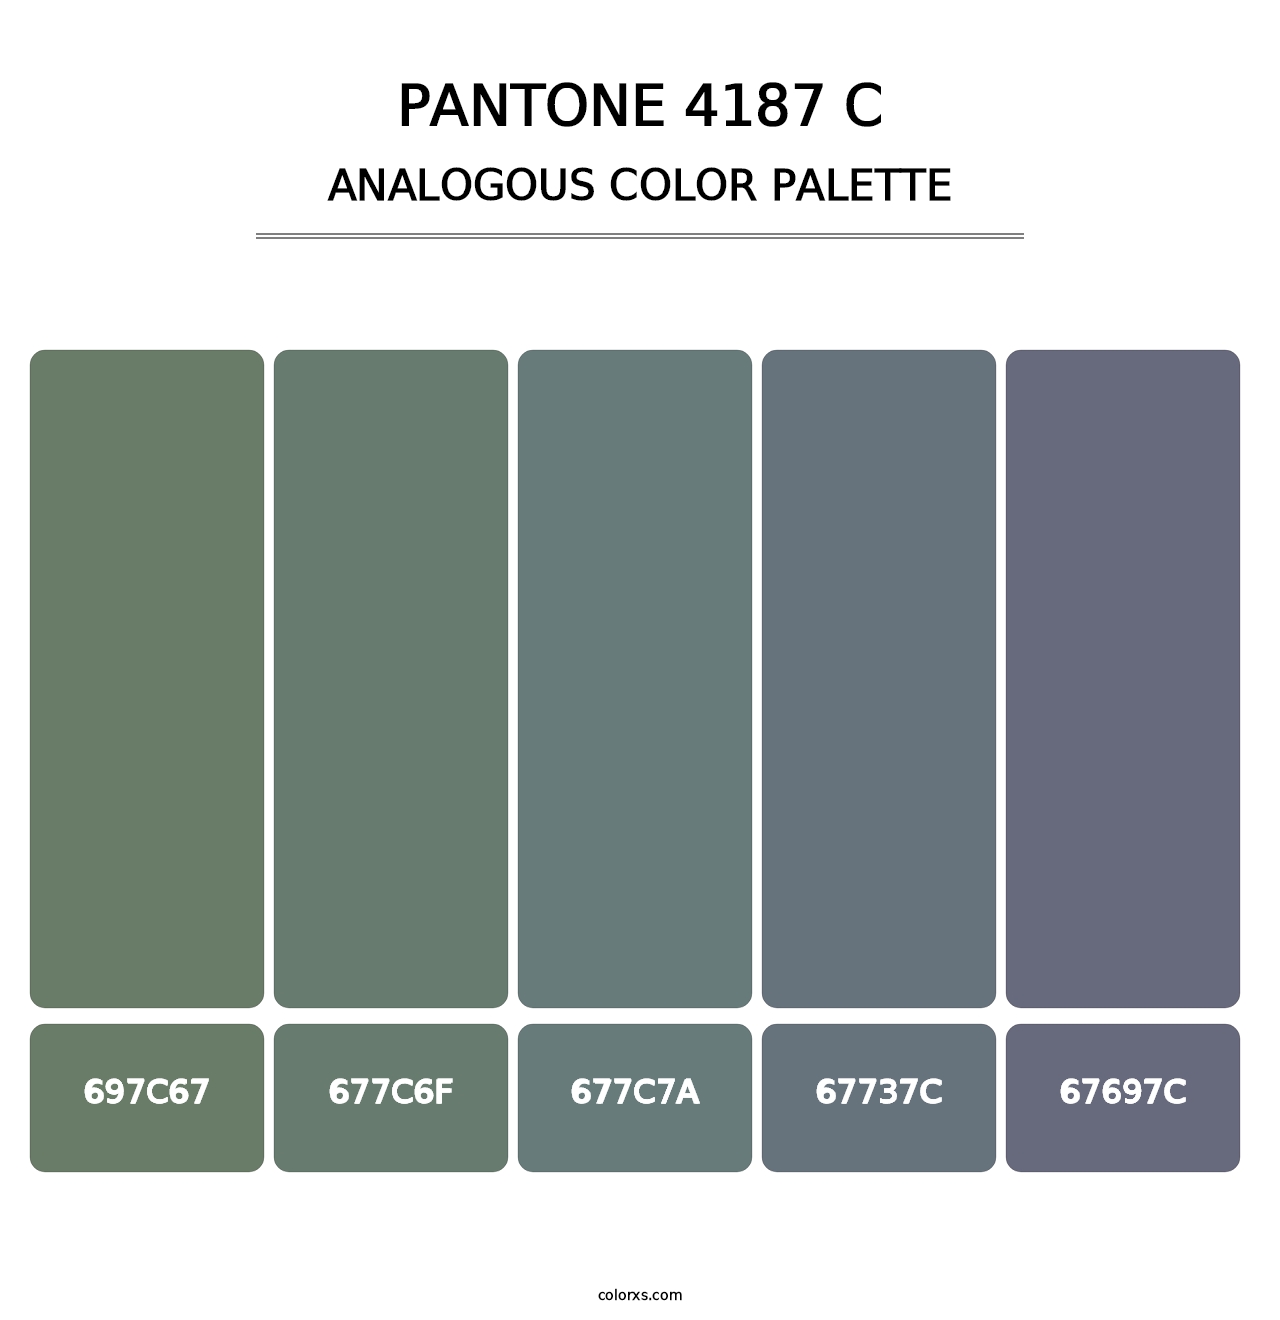 PANTONE 4187 C - Analogous Color Palette